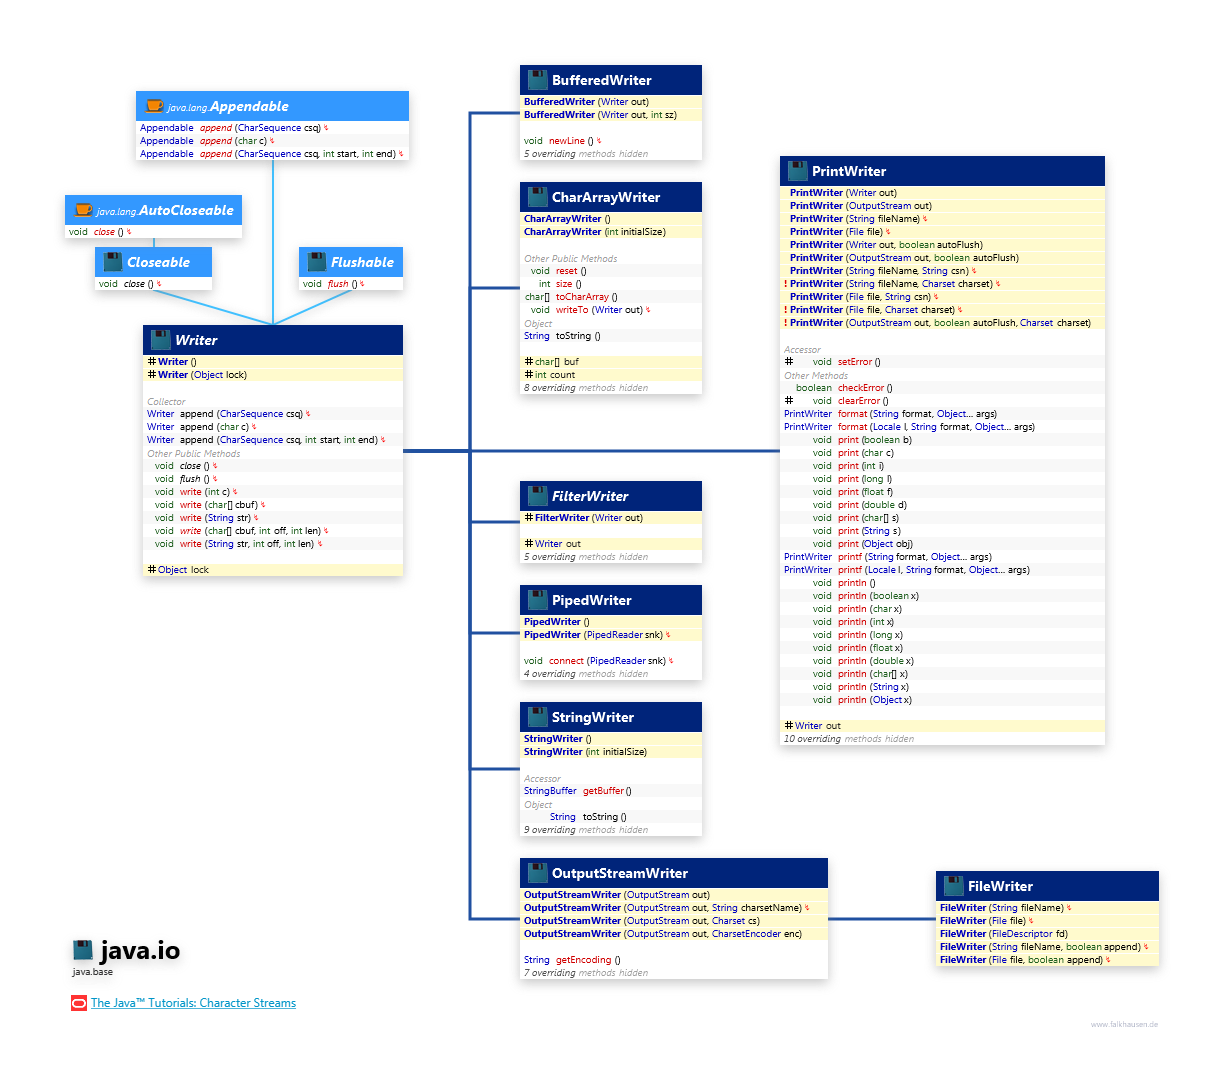 java.io Writer class diagram and api documentation for Java 10